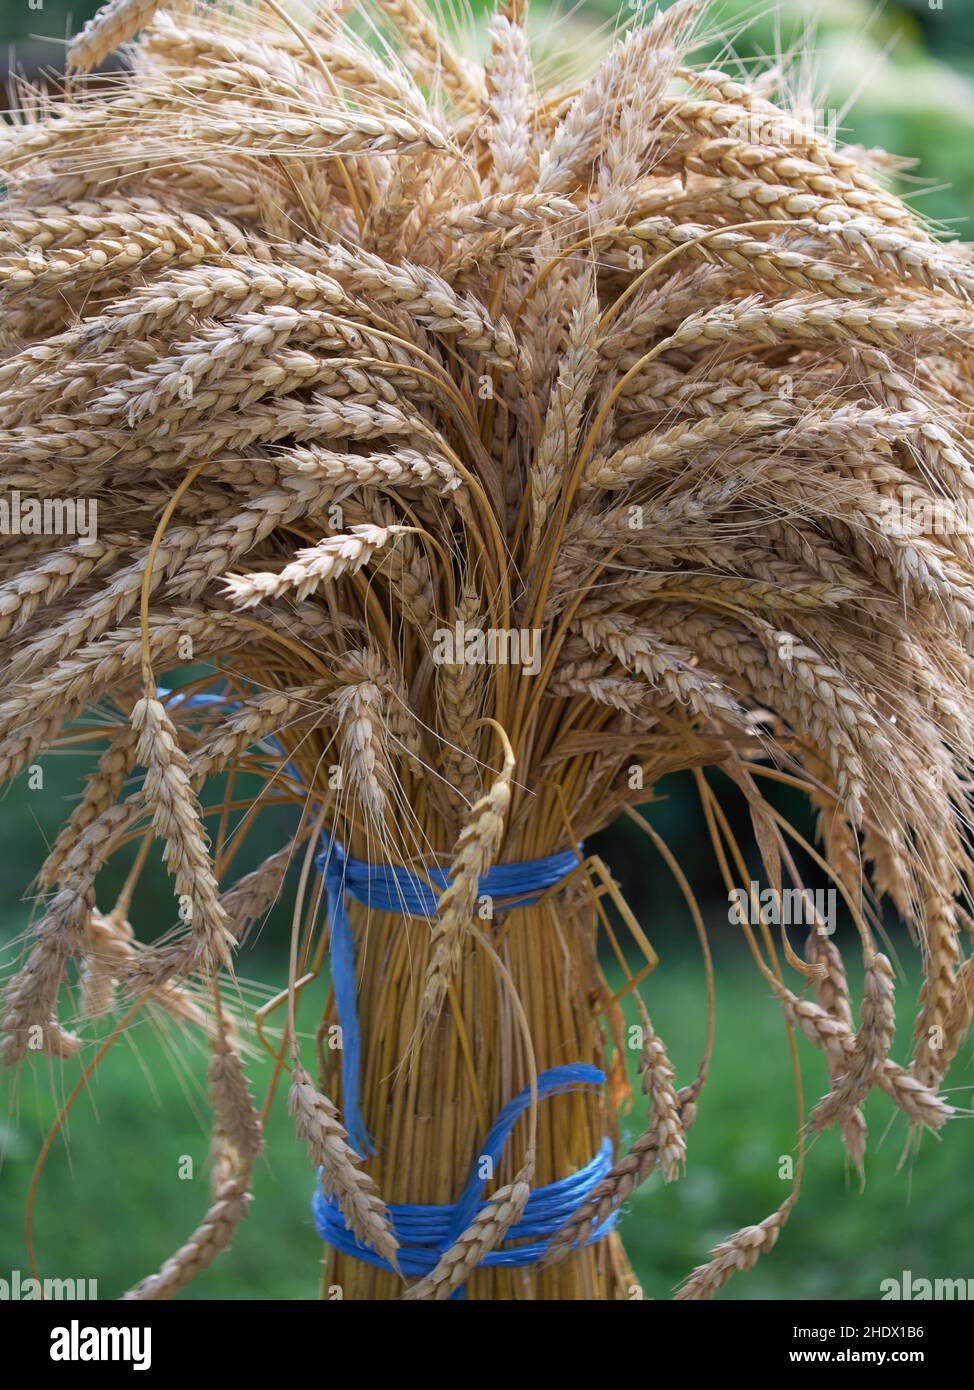 Un taglio di spighe di grano, primo piano. Un mazzo di spikelets maturi legati con corde blu. Foto Stock